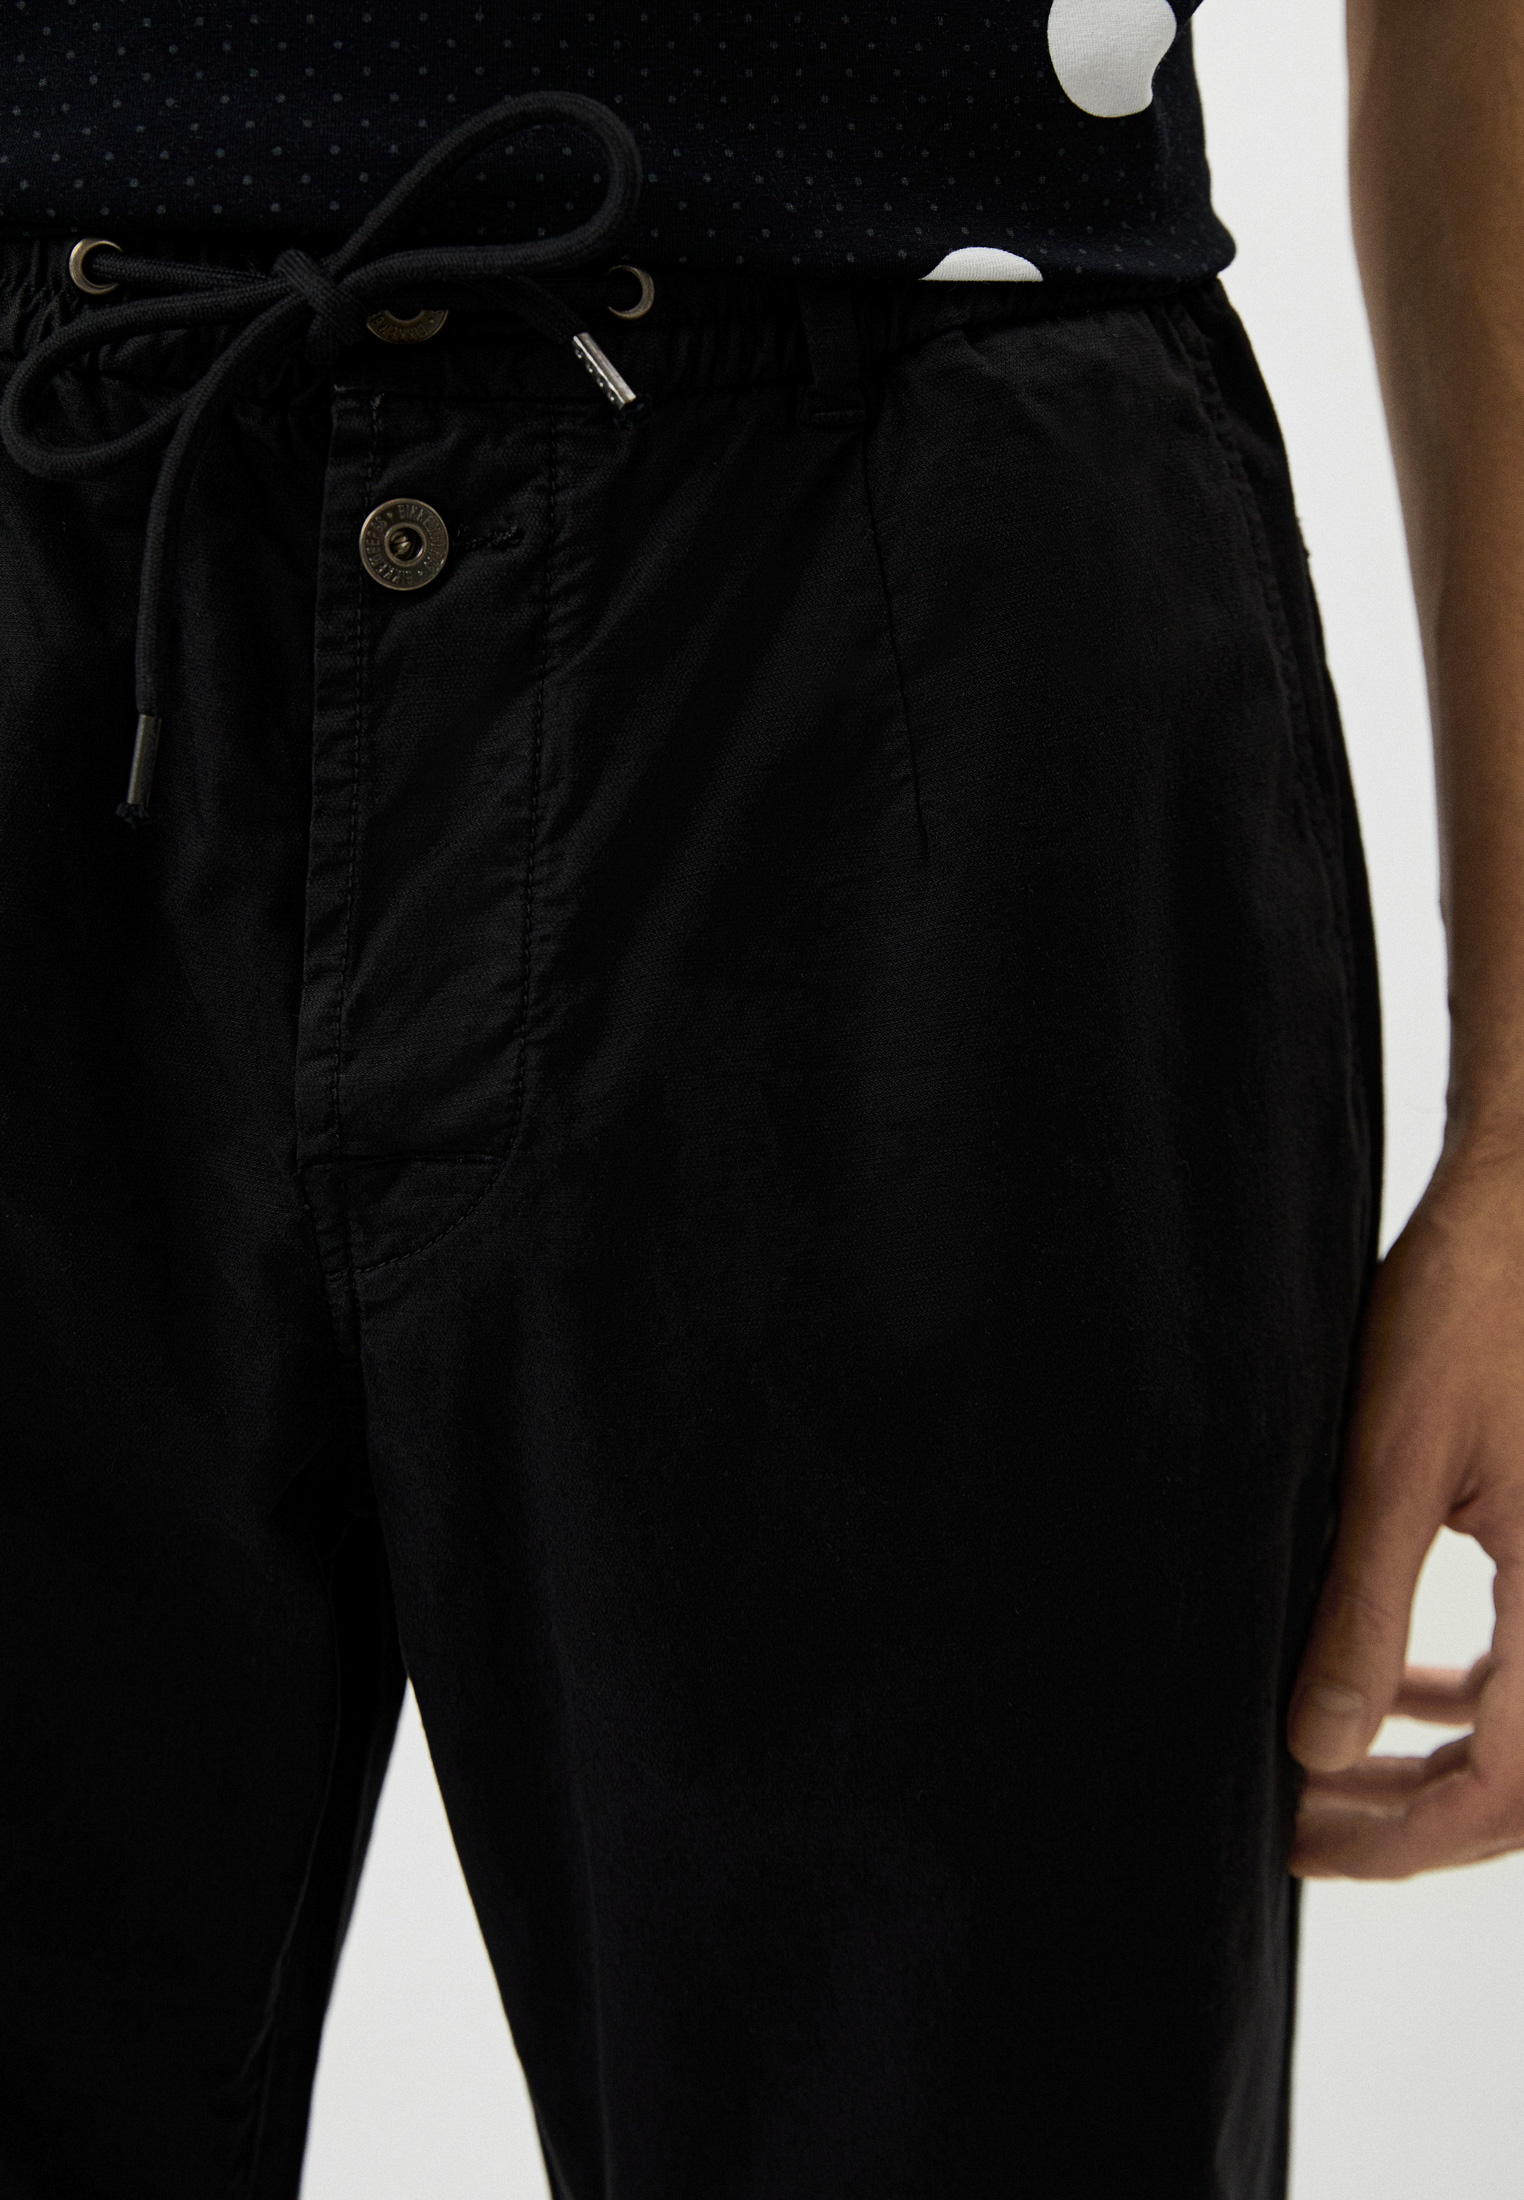 Мужские повседневные брюки Bikkembergs (Биккембергс) C P 108 01 S 3813: изображение 4